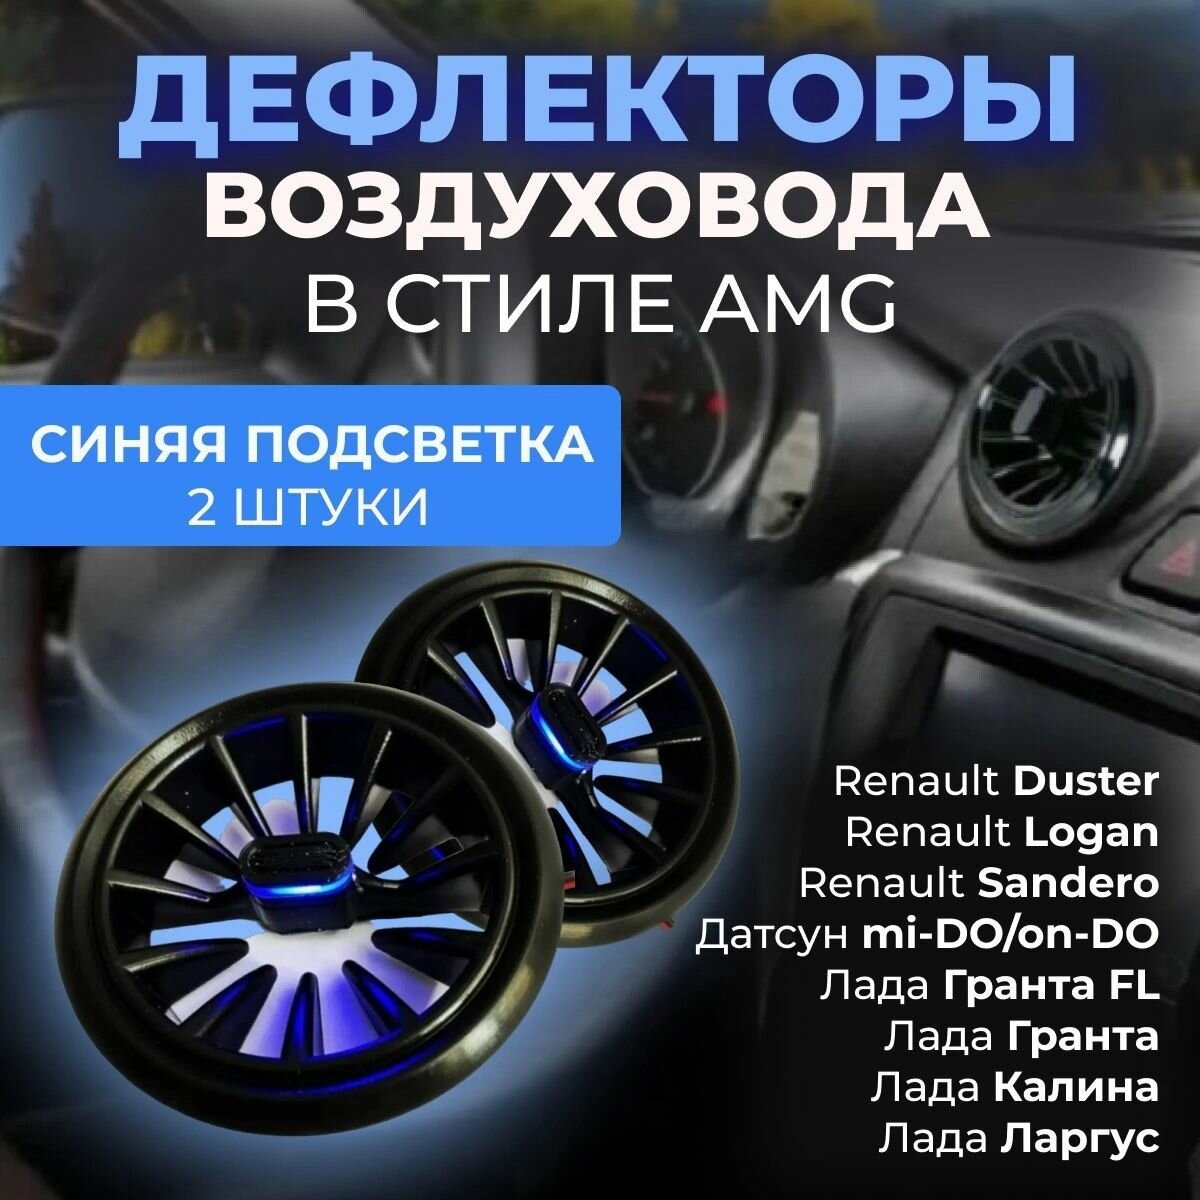 Автомобильный Дефлектор (сопла) воздуховода в стиле AMG (2 шт.) Синий цвет для для Гранта Калина 2 Датсун Дастер Ларгус Газель Бизнес Газель Некст